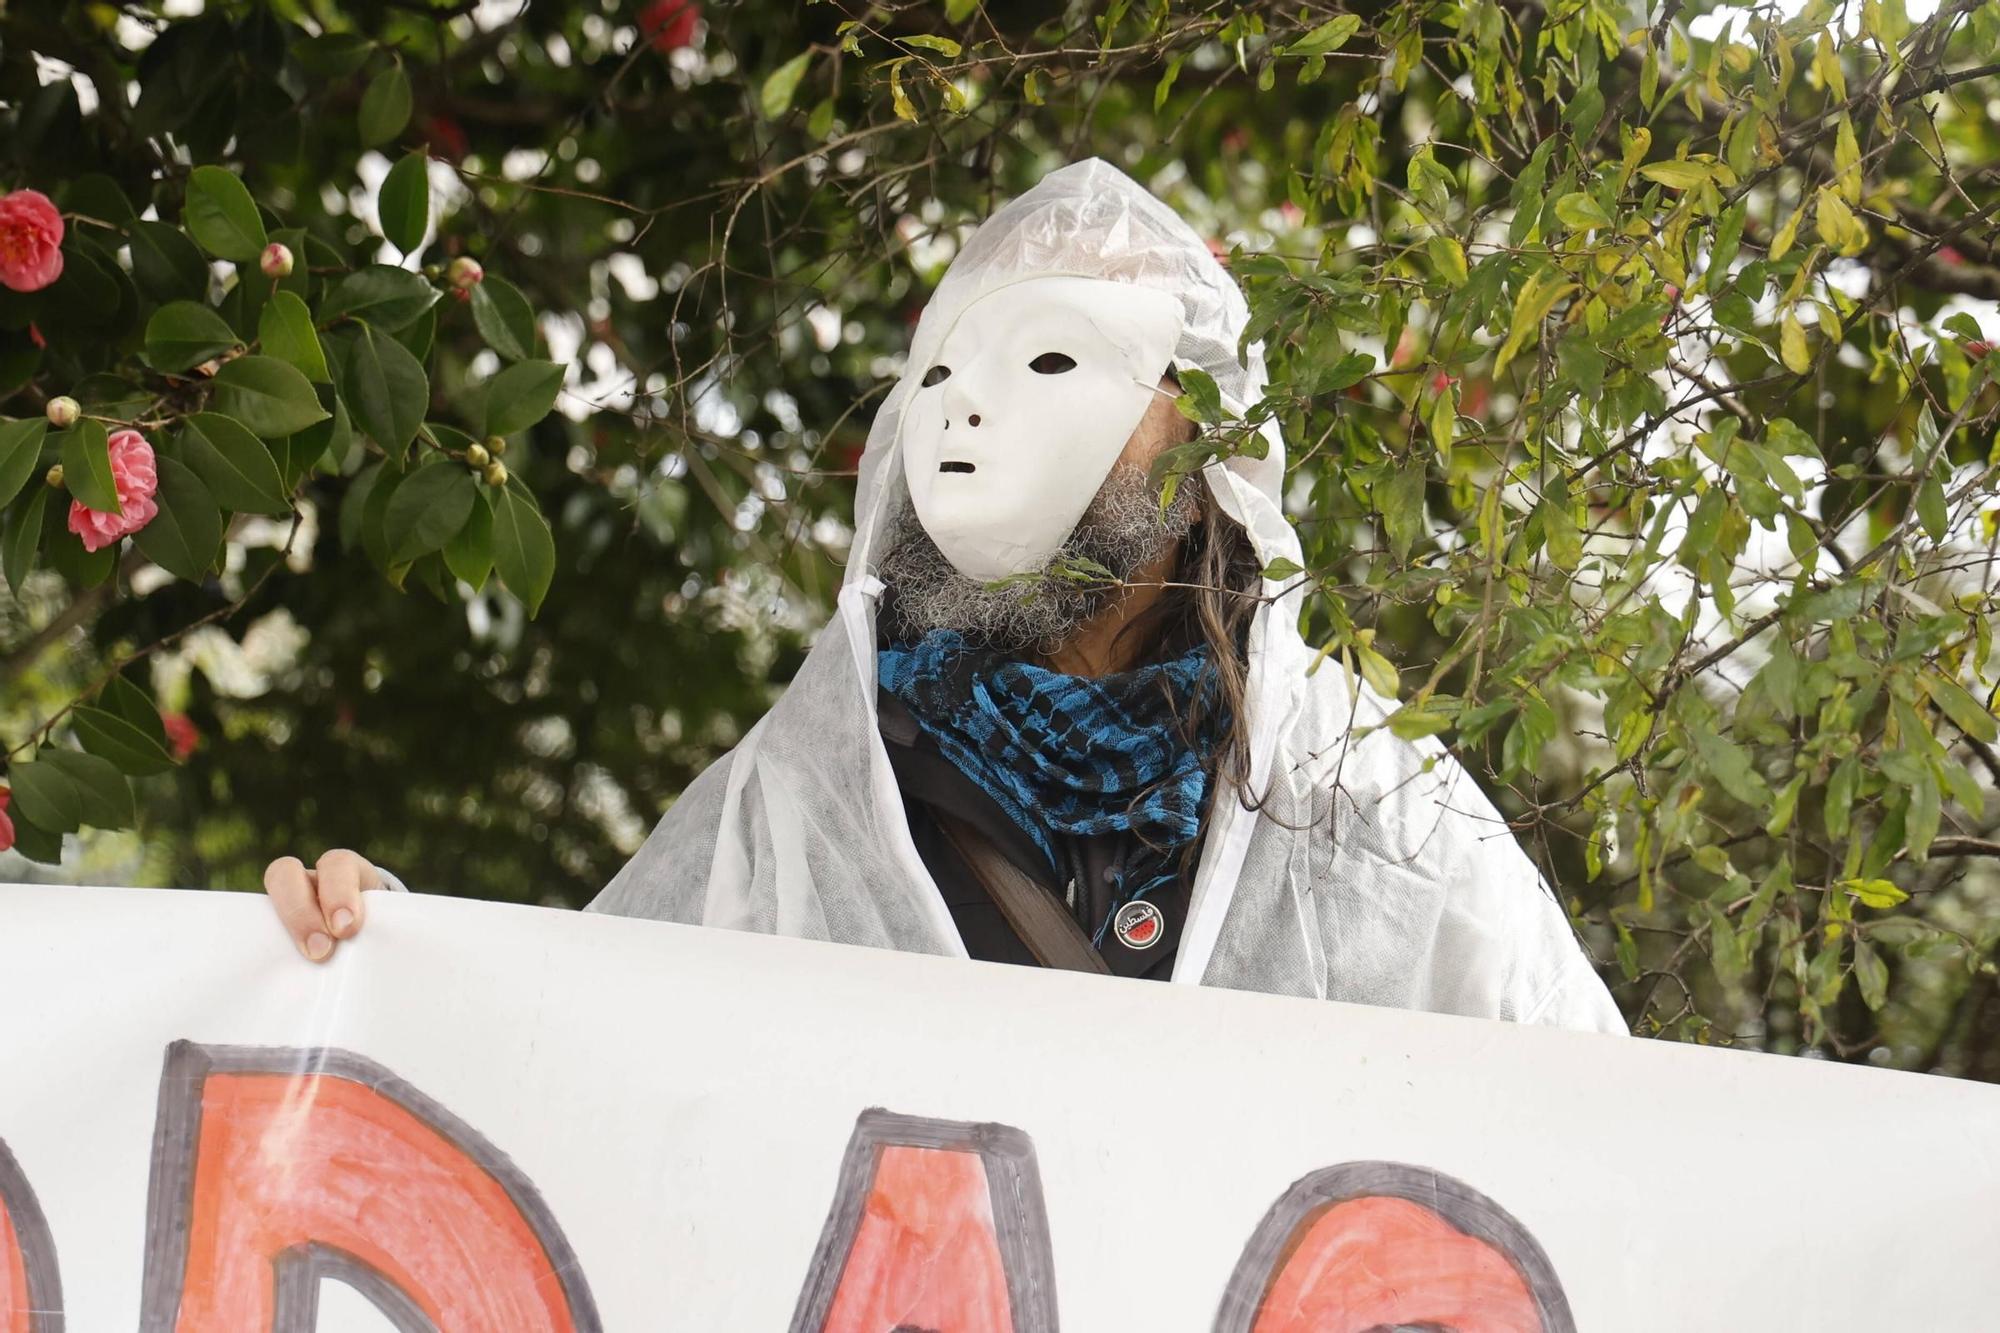 Así se ha desarrollado la manifestación por la crisis de los pélets en Santiago